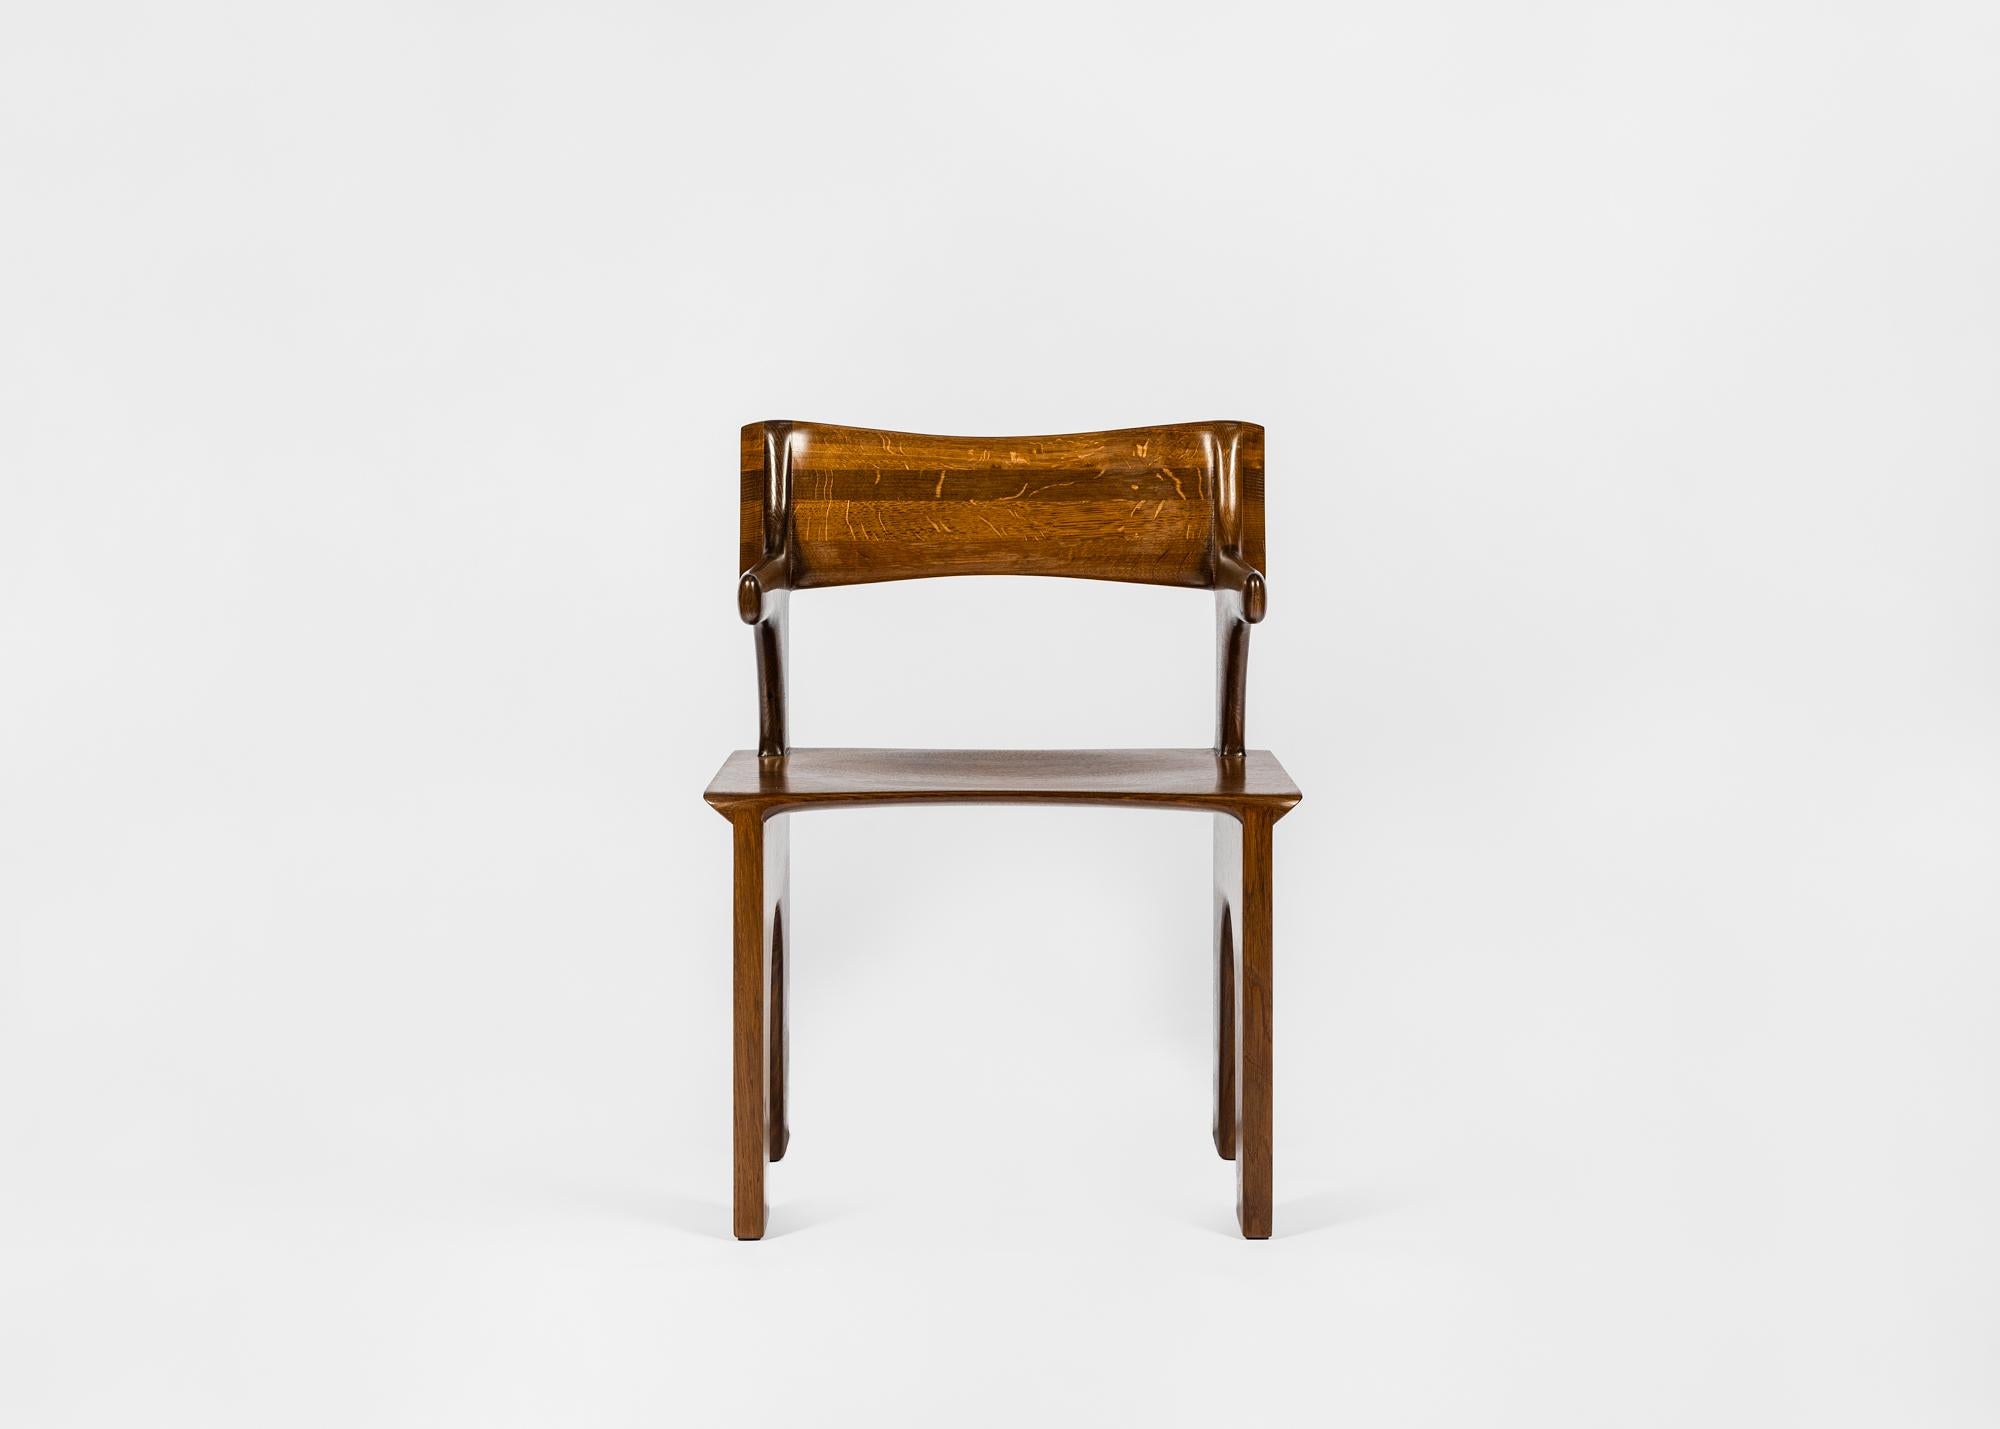 La Collection Kuro, qui marque les débuts de Lukas Cobers dans le design de meubles, est un lien entre les formes rurales sculptées à main levée et les lignes graphiques, en réponse à sa recherche de pureté dans les formes et la matérialité.

Le